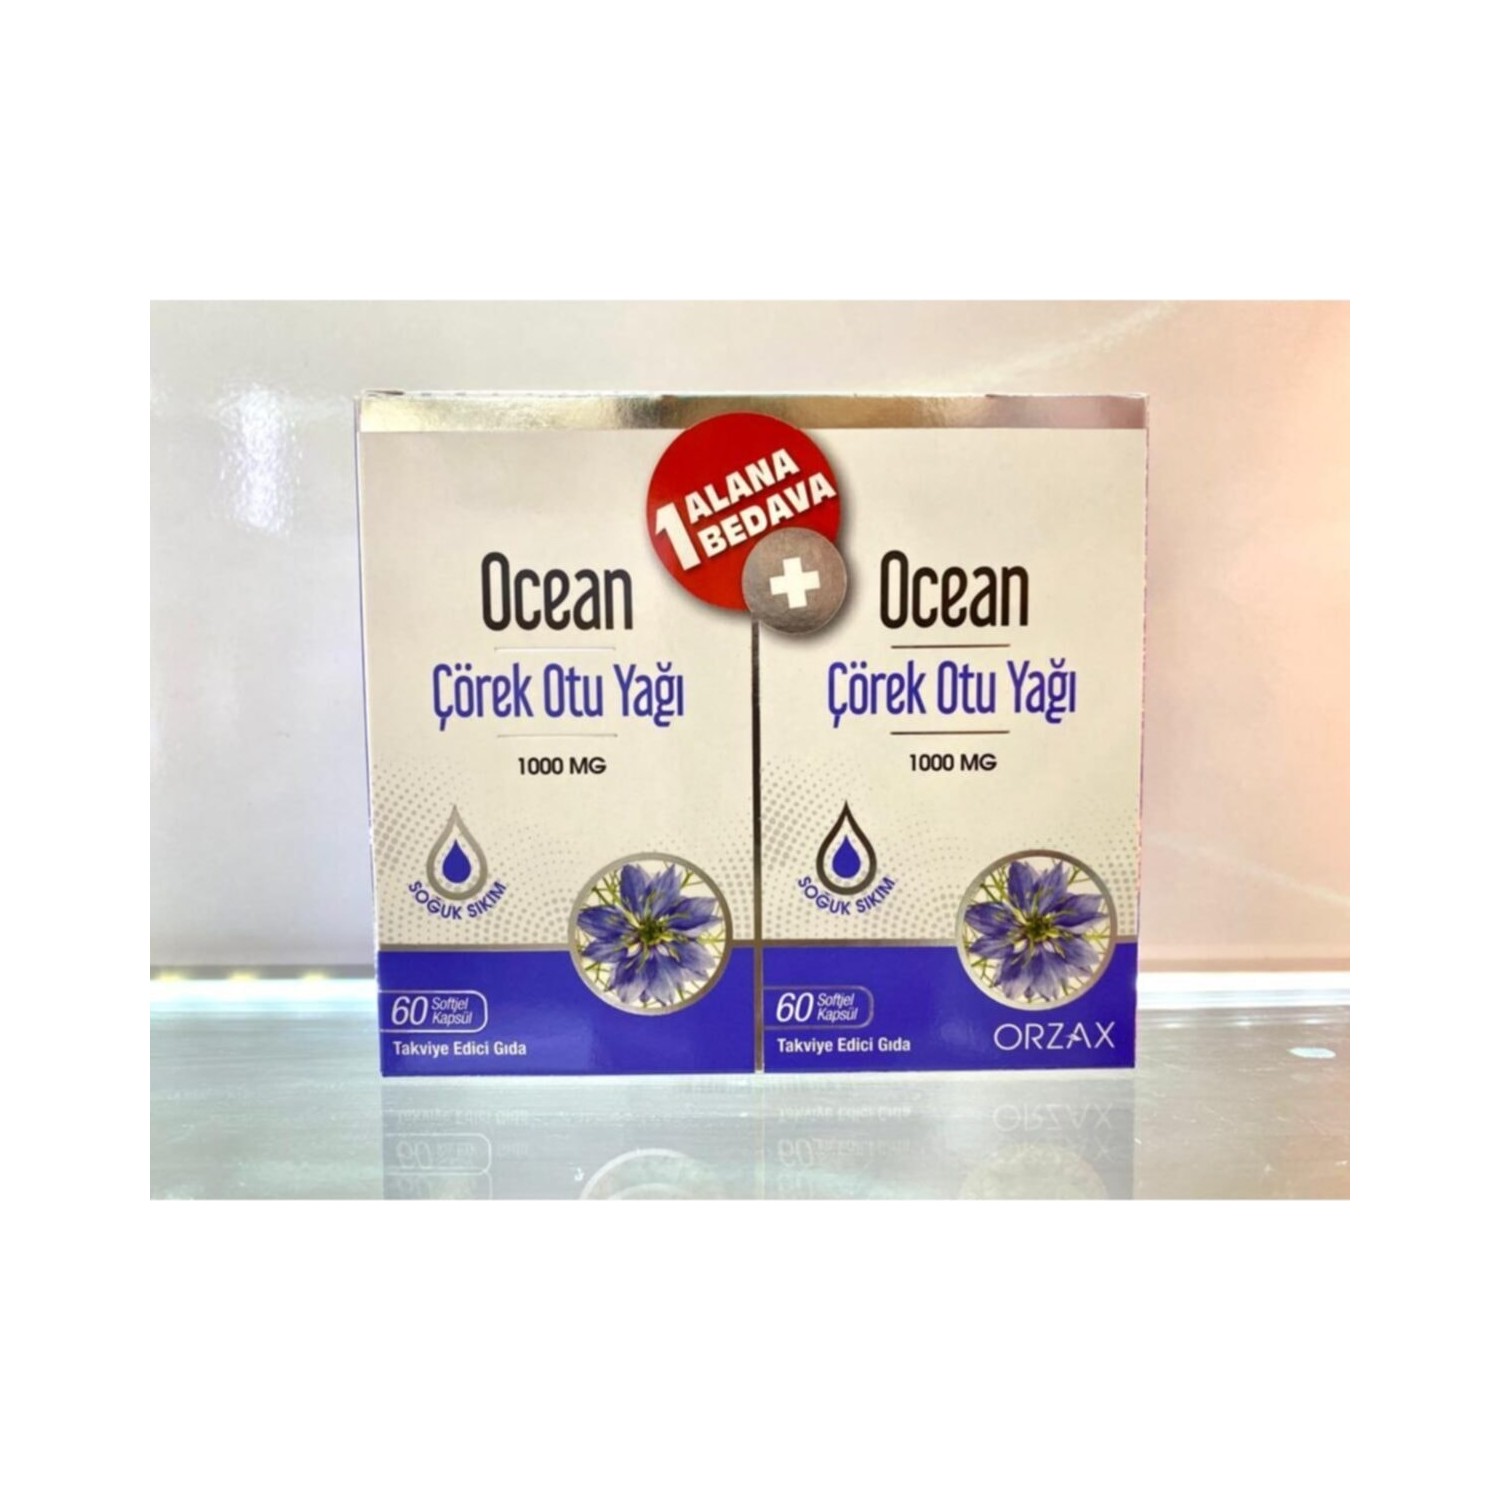 Масло черного тмина Orzax Ocean 1000 мг, 2 упаковки по 60 капсул фотографии